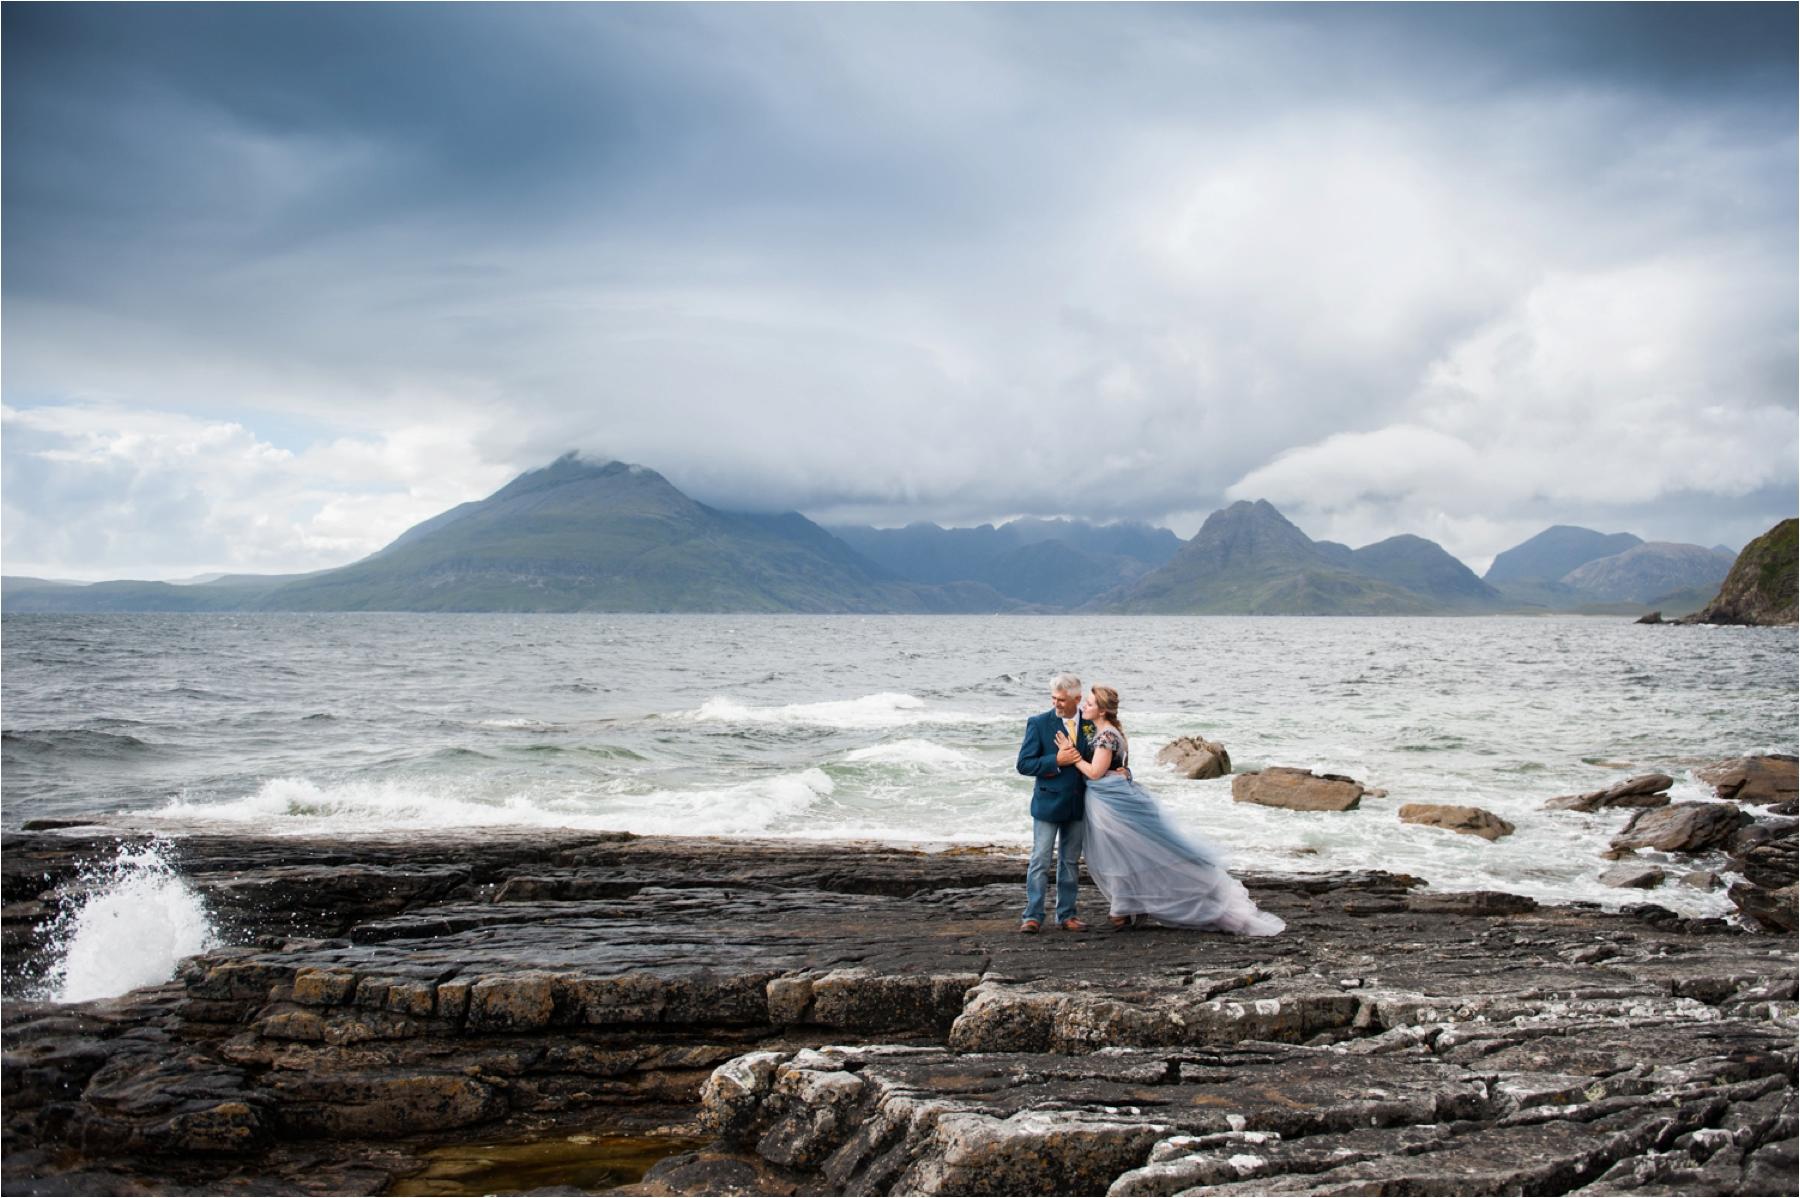 Michaela & Iain’s wedding on the Isle of Skye